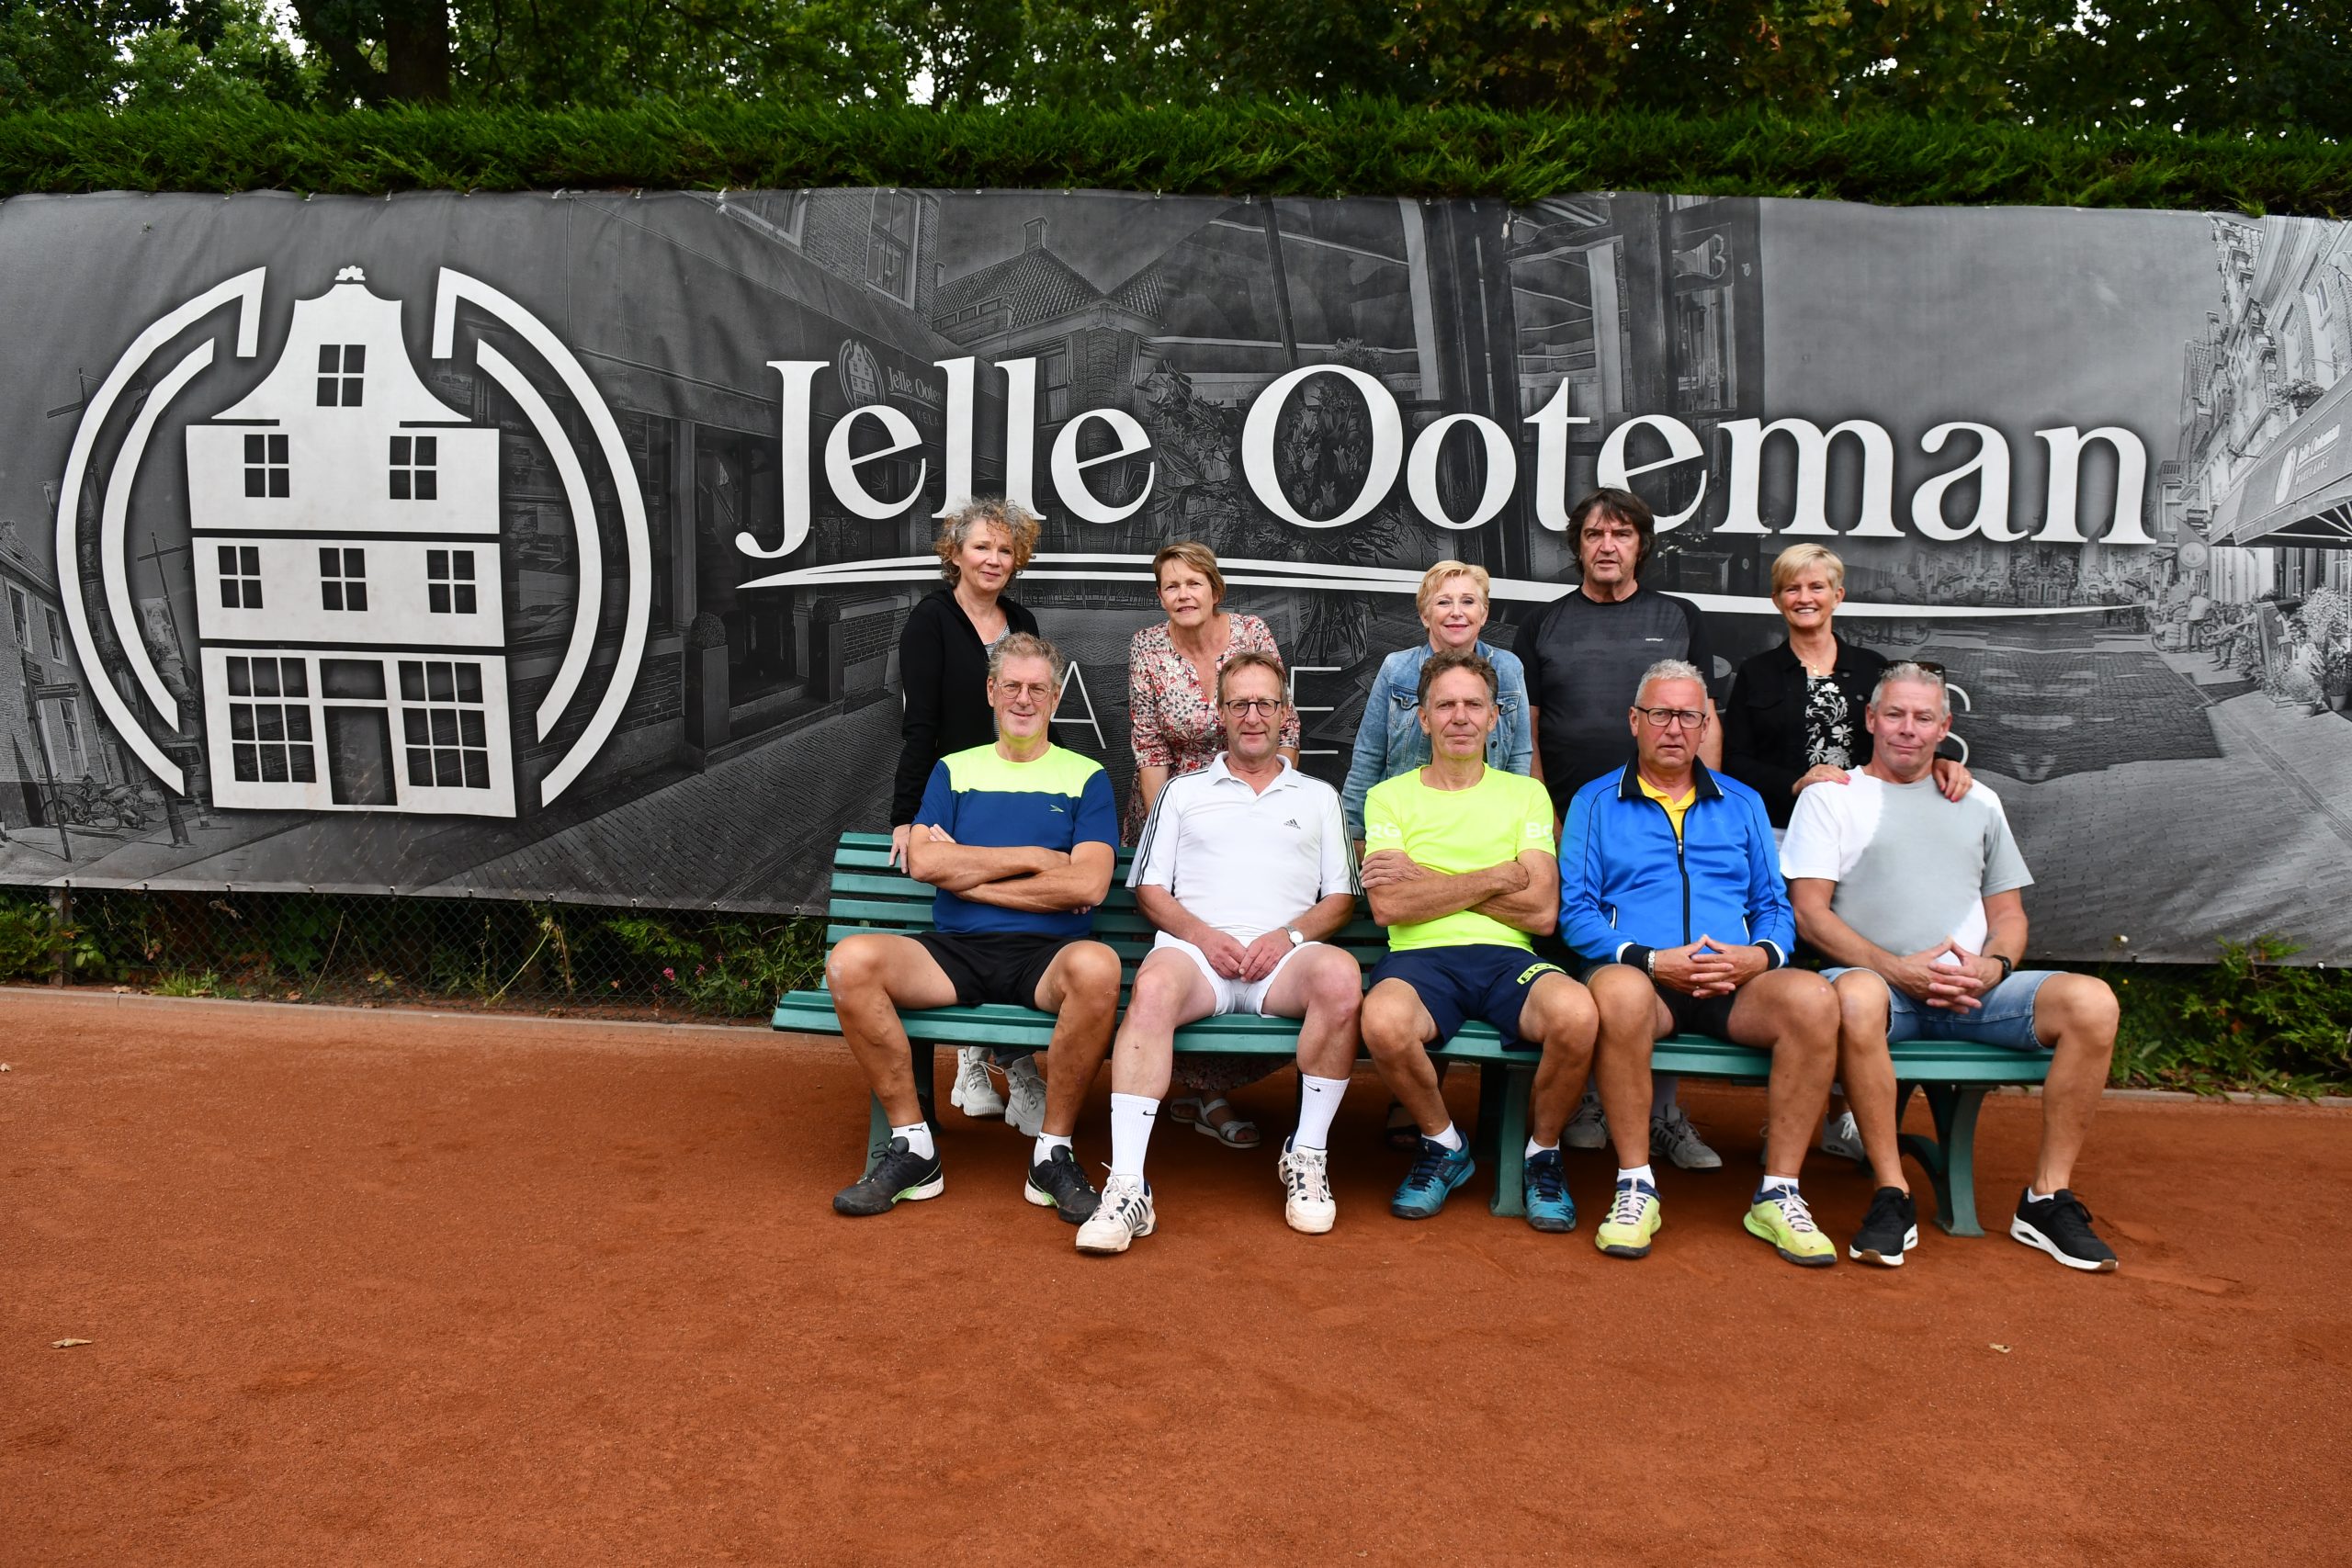 Terugblik Eerste Jelle Ooteman toernooi